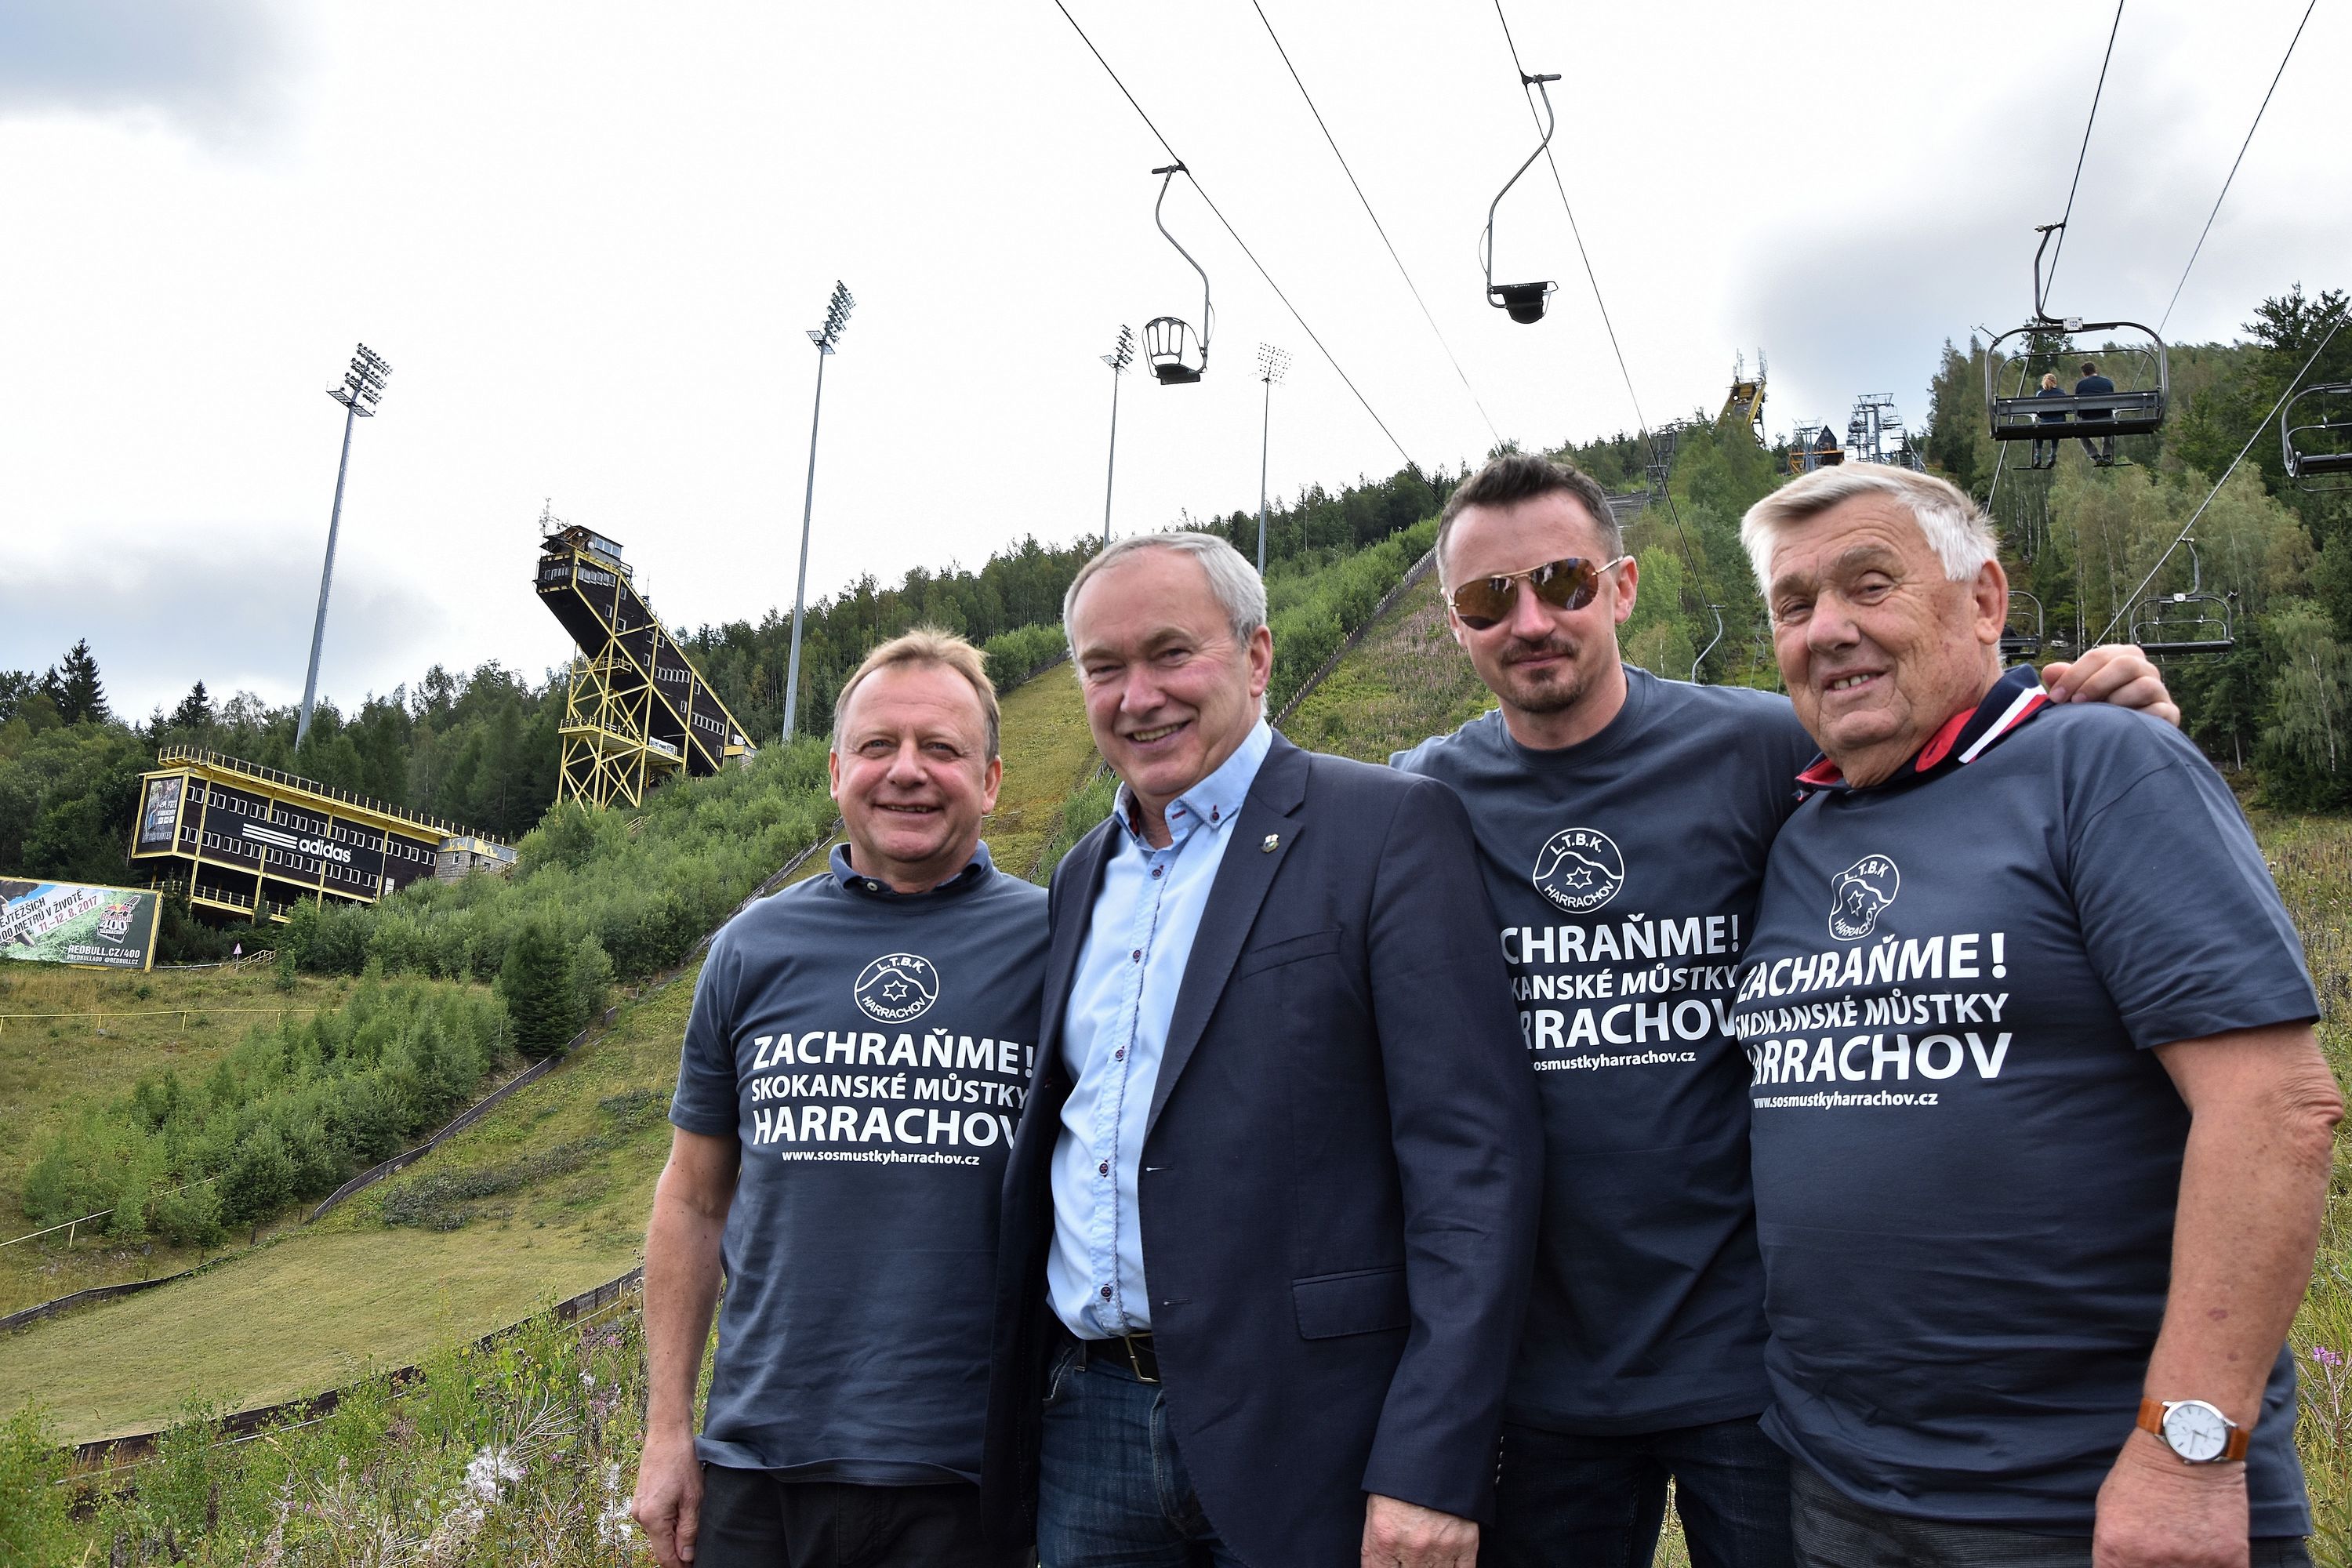 Pavel Ploc, Mirosław Graf, Adam Małysz i Dalibor Motejlik (Jakub Janda udzielał wywiadu) wspierają inicjatywę przywrócenia skakania na nartach w Harrachovie